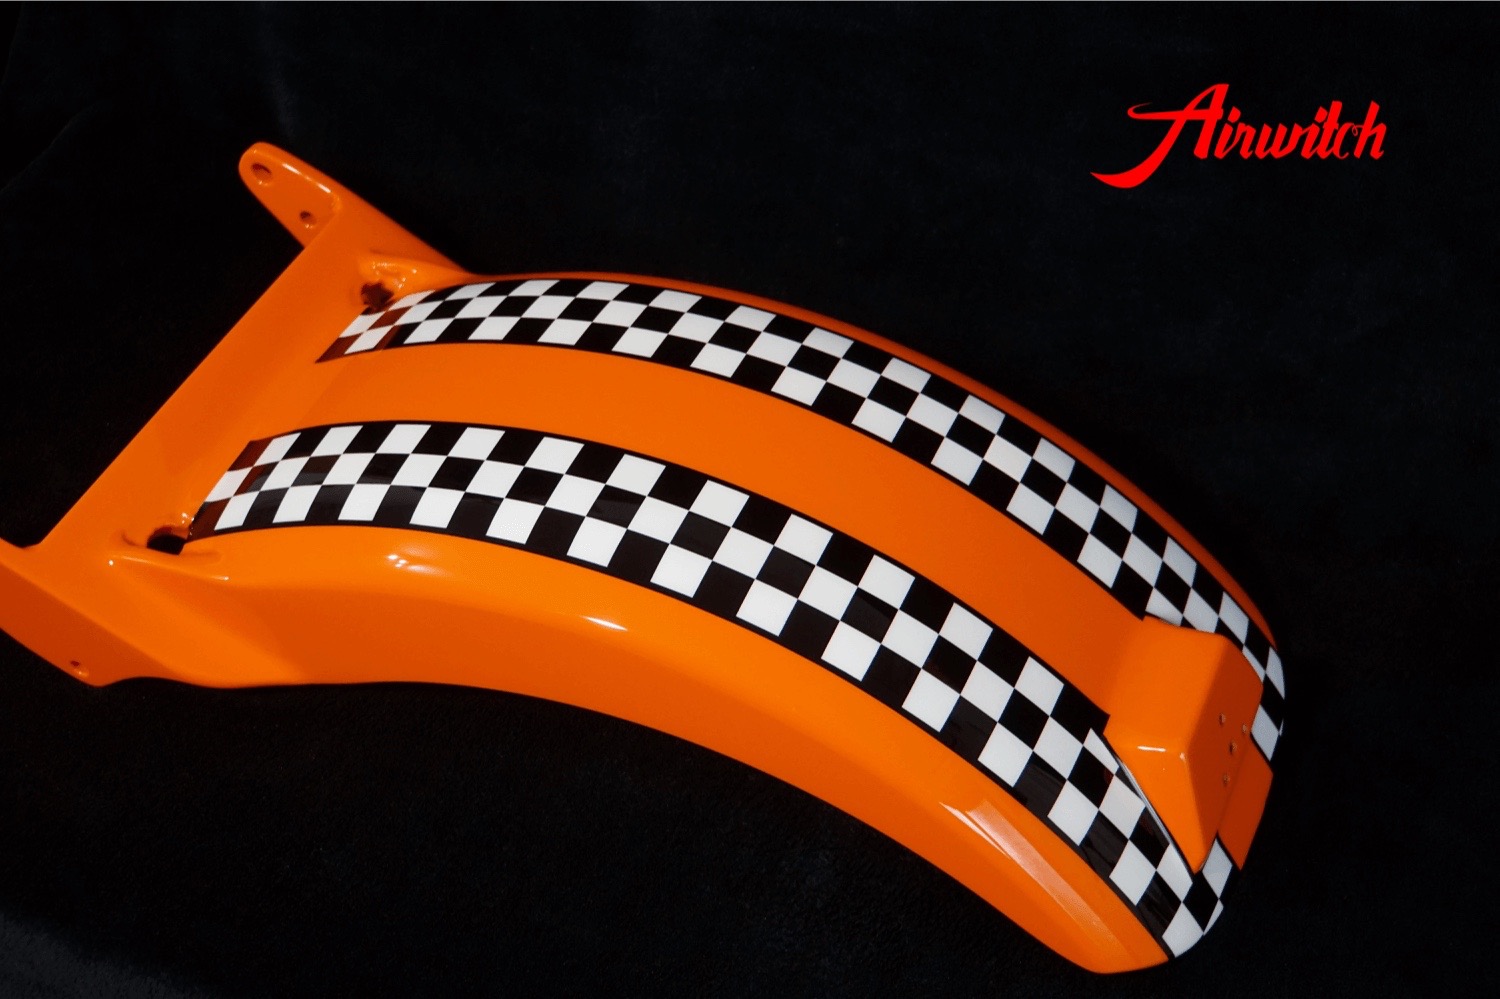 Custom Paint Harley Daivdson Softail Lackierung Oldschool Racing Orange Zielflagge Airbrush mit Schriftzug